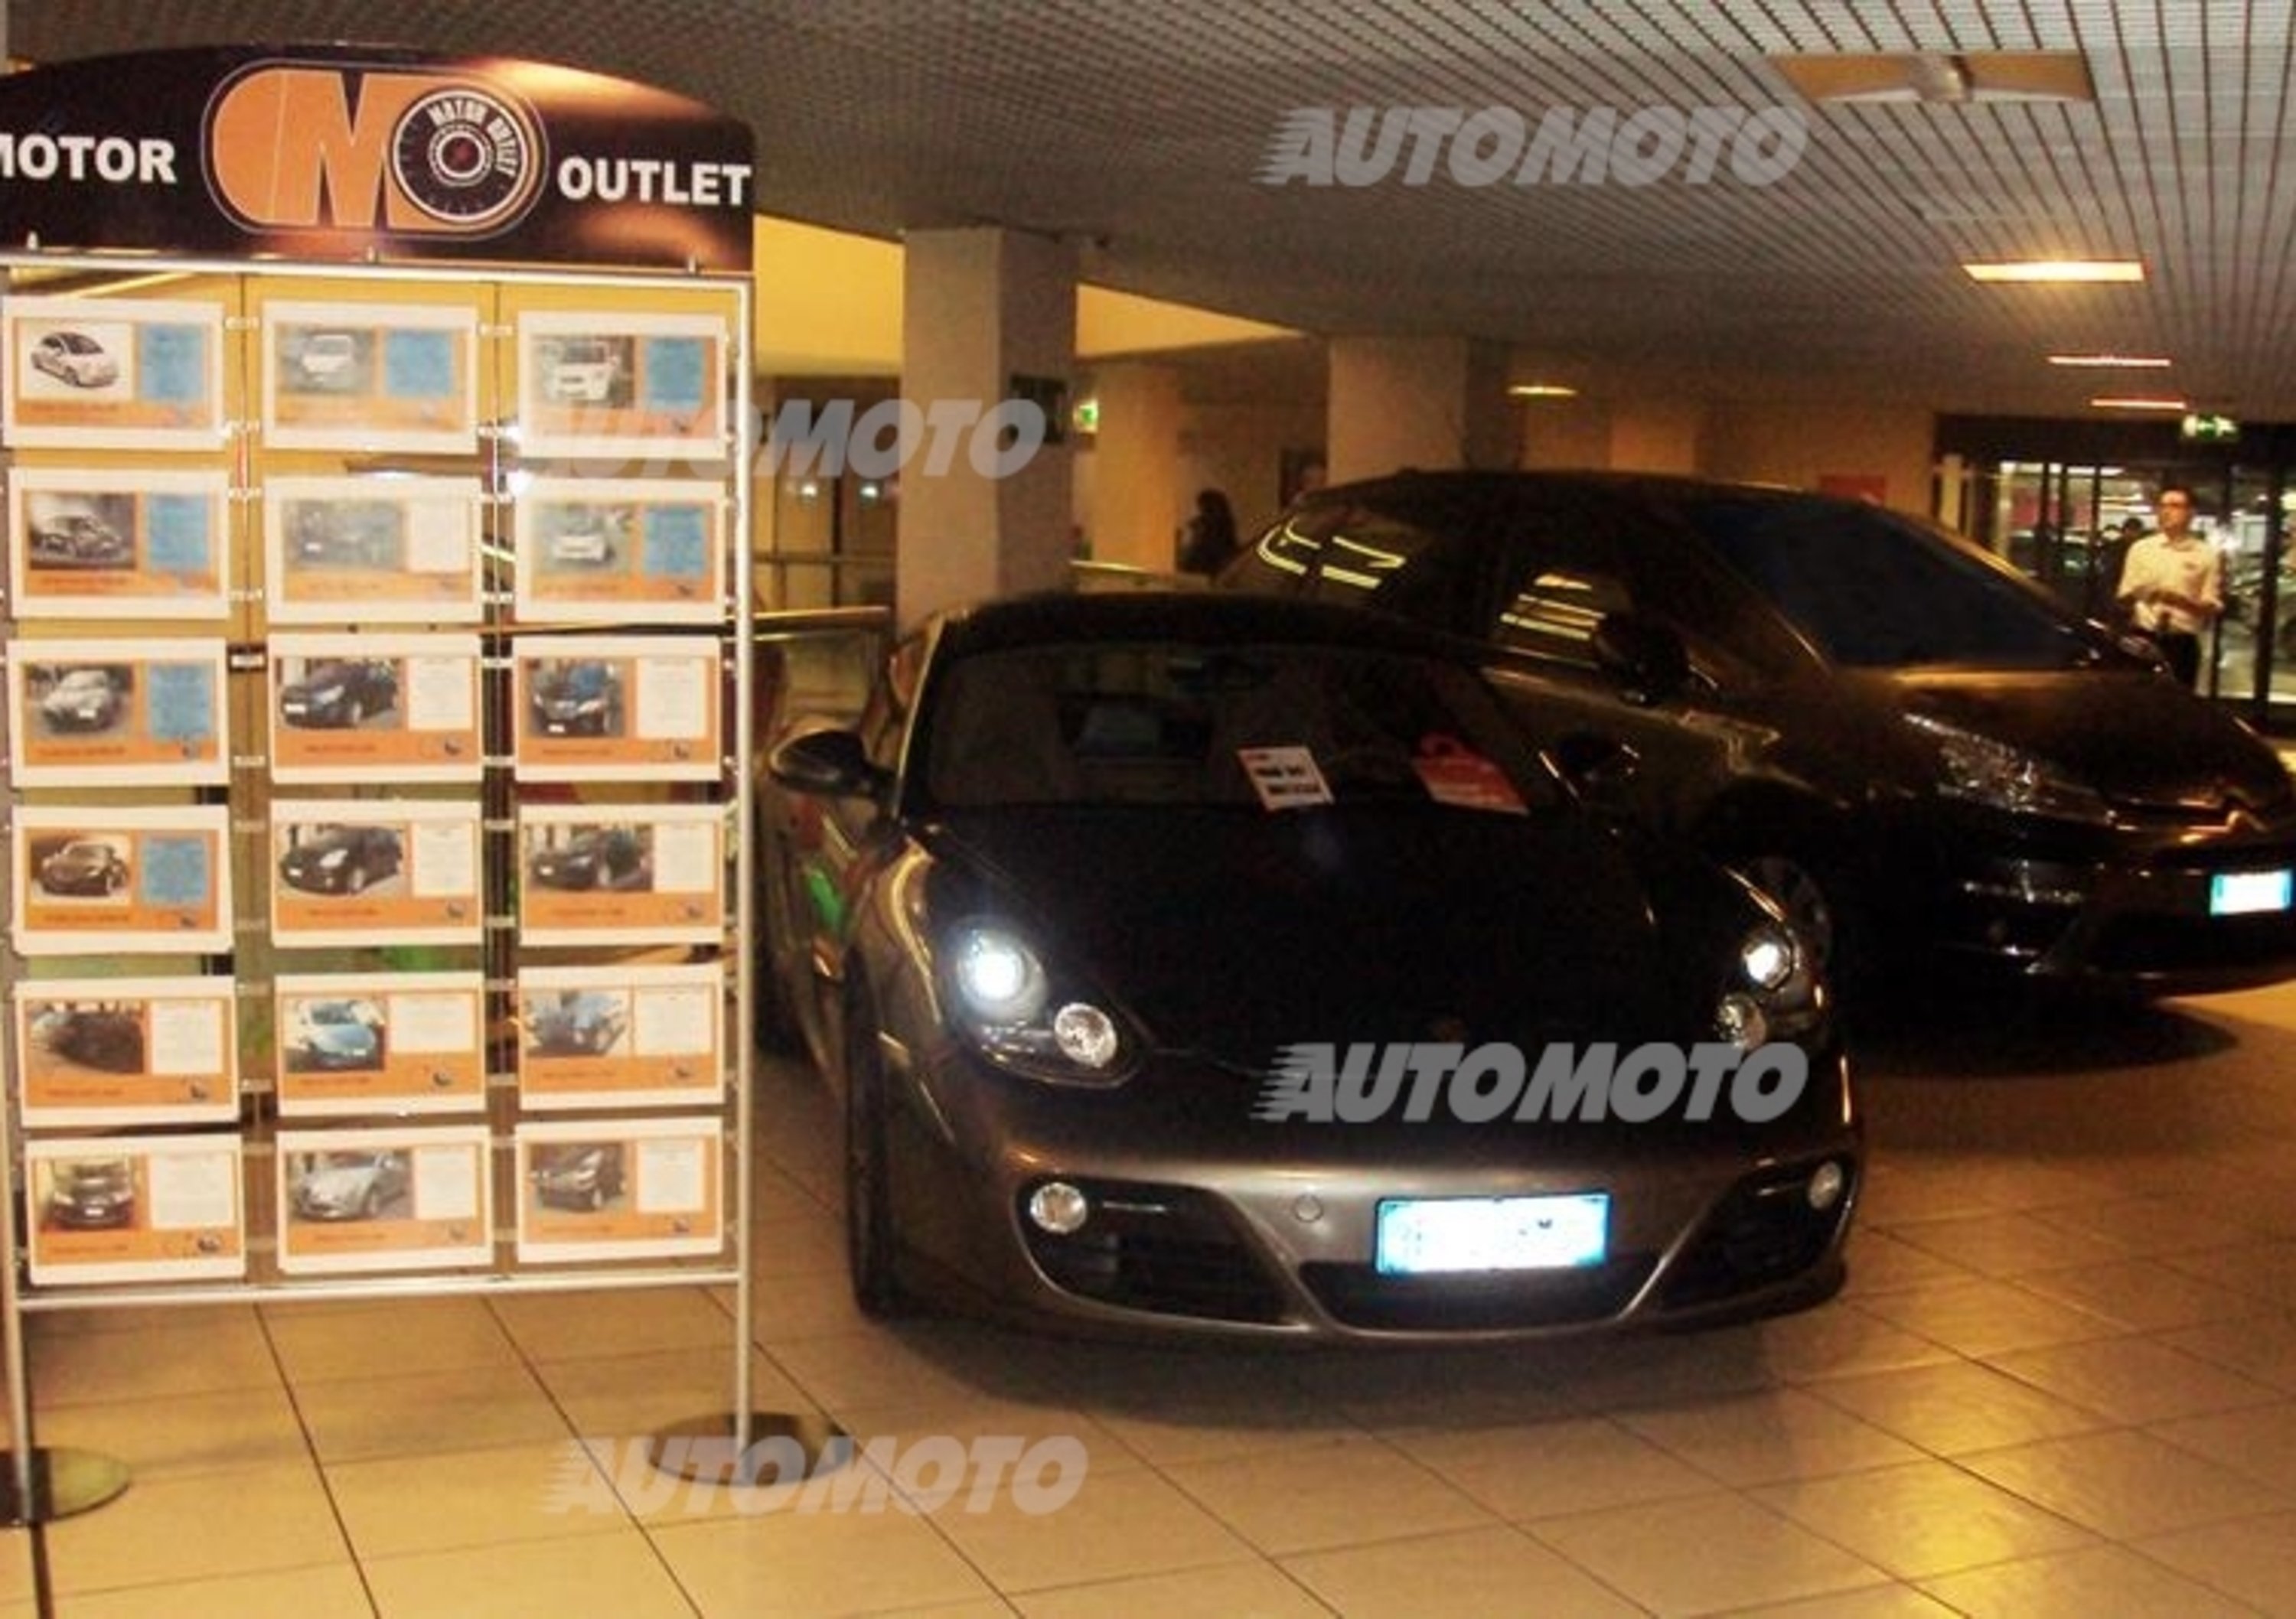 Gulf Motor Outlet: ritorna in Italia lo storico marchio di lubrificanti con una nuova offerta